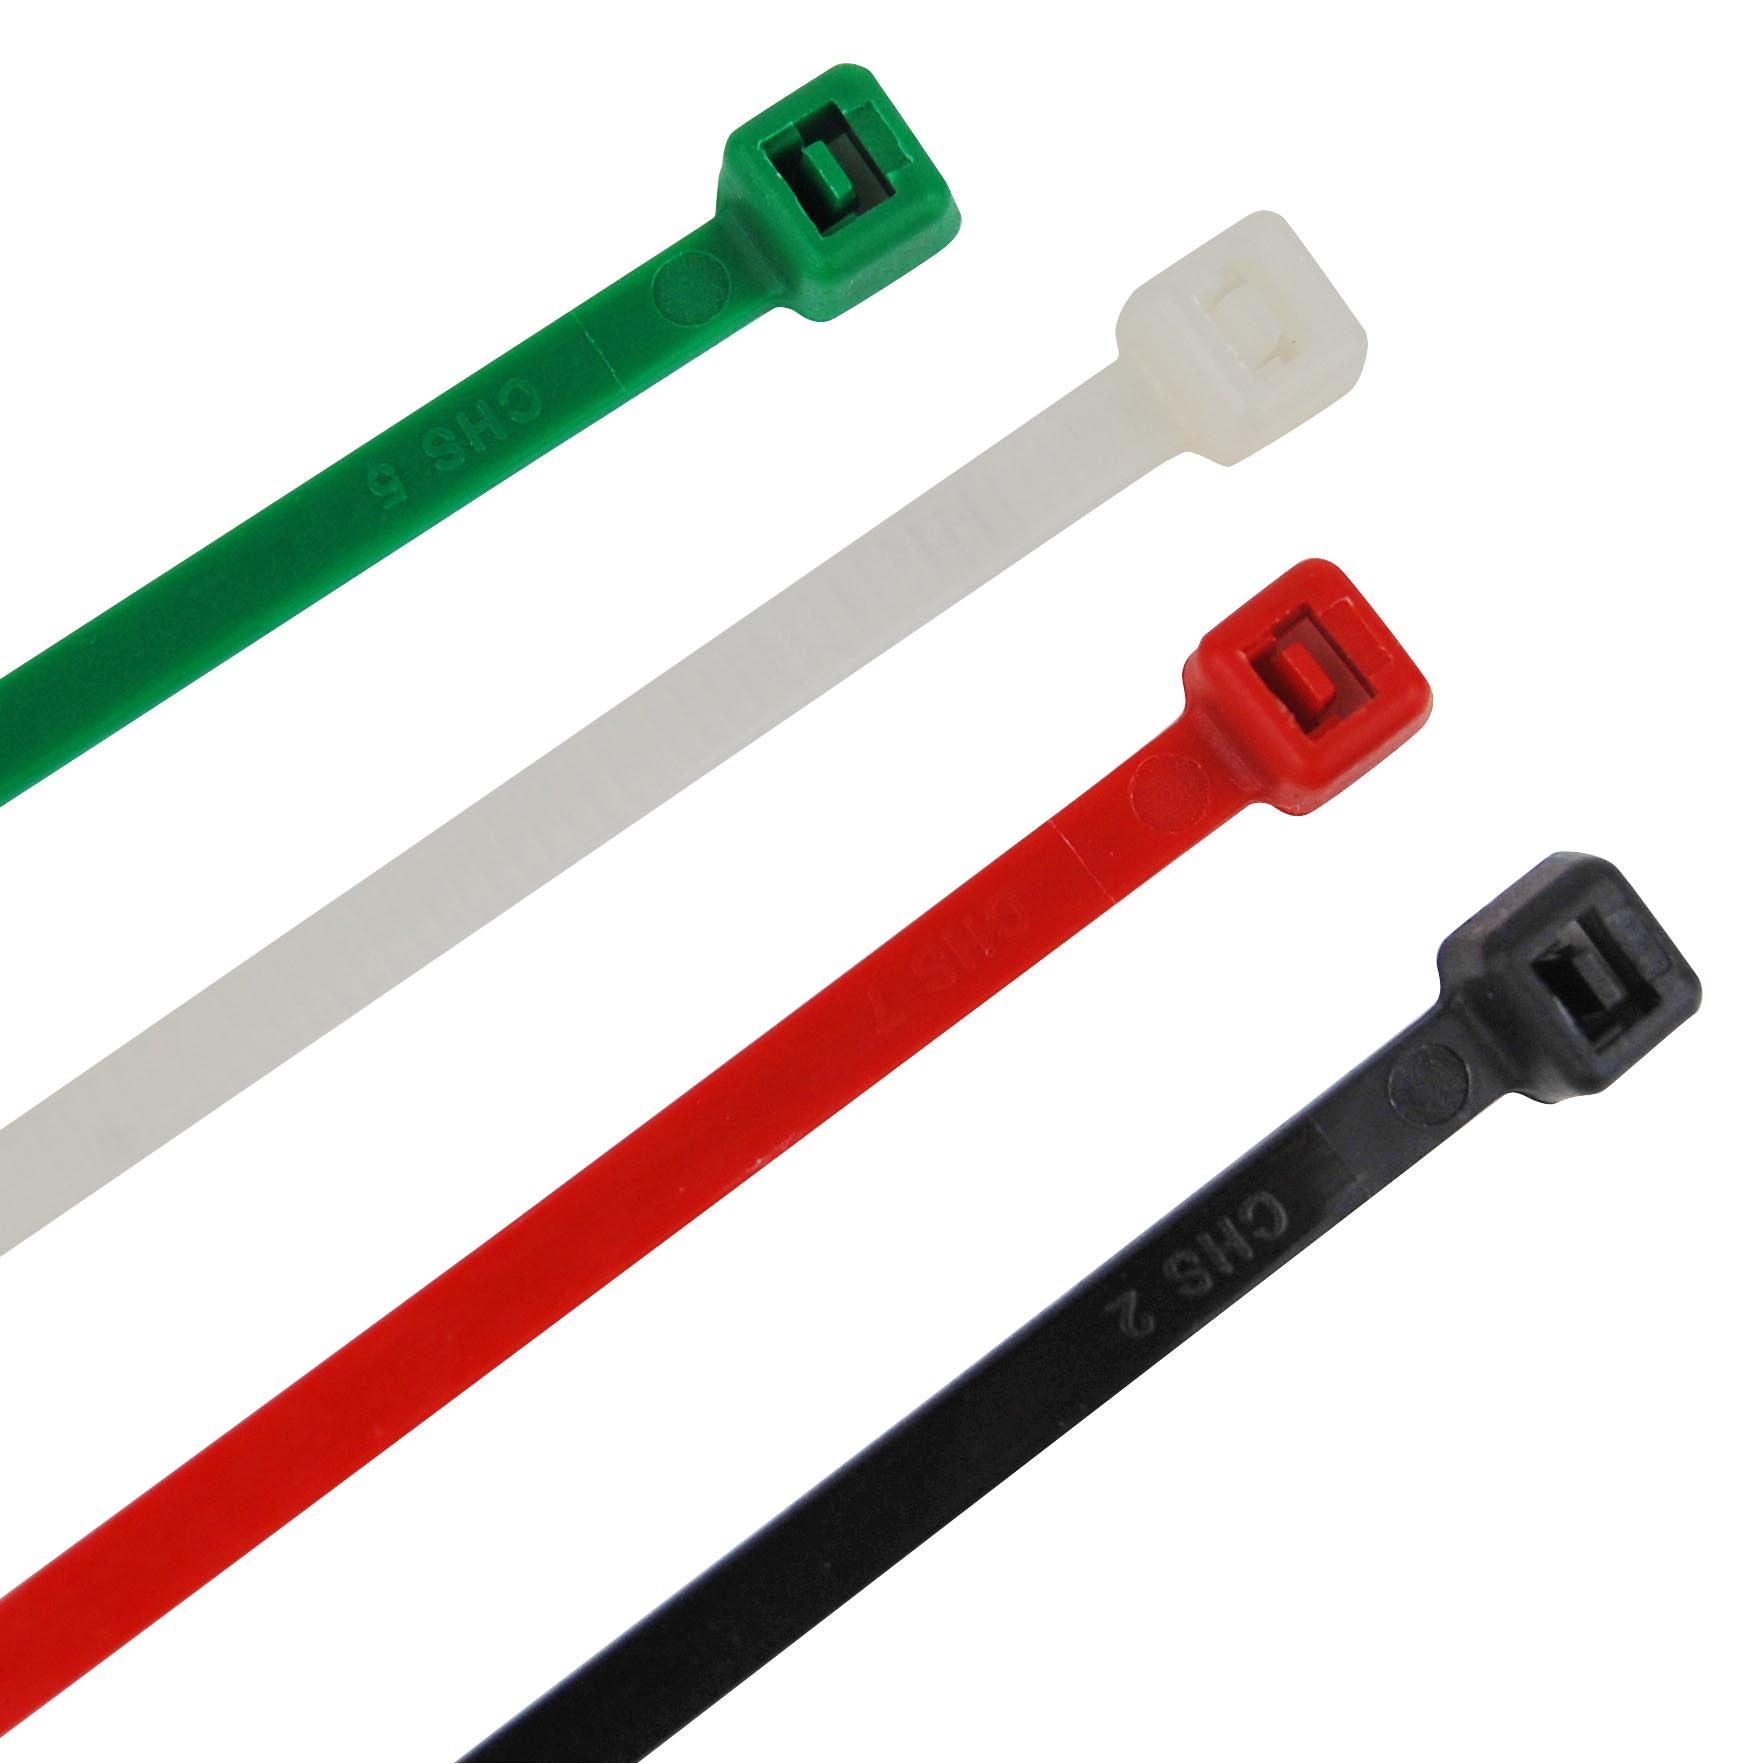 Kabelbinder farbig sortiert im Set: Grün, Weiß, Rot und Schwarz.